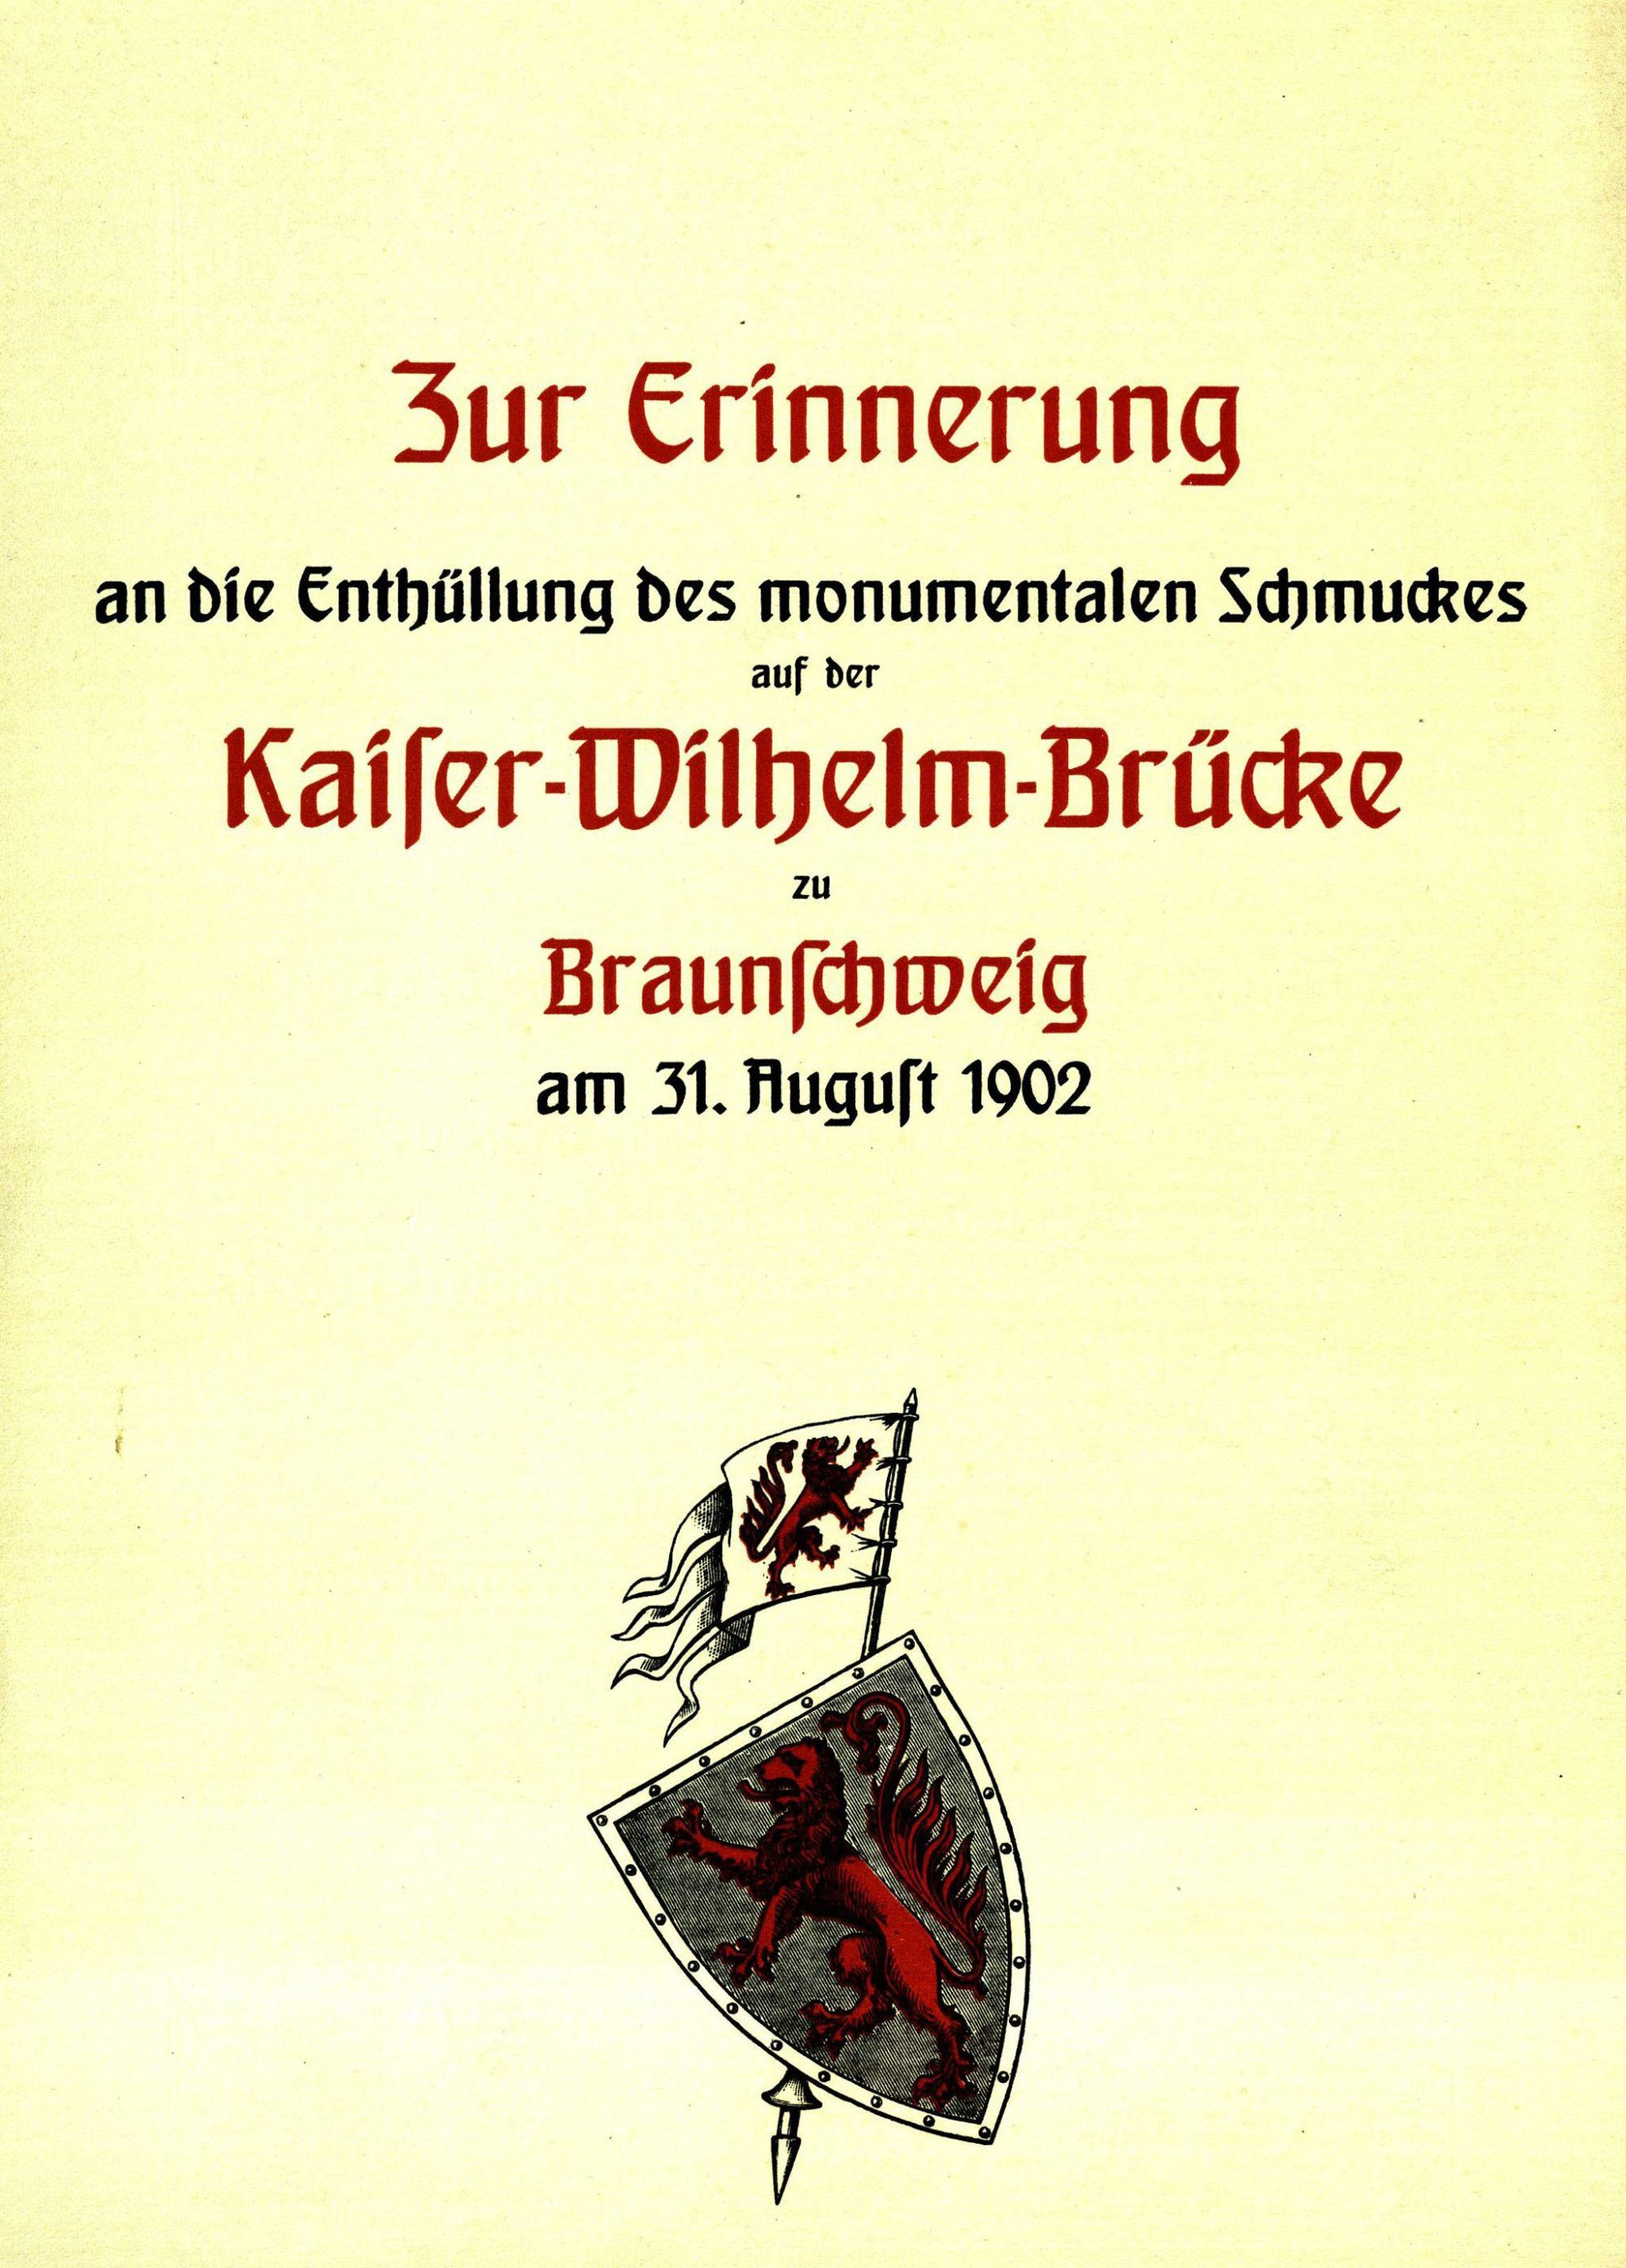 Theaterbrücke, Einladung zur Einweihung des Figurenschmucks, 1902 (Wird bei Klick vergrößert)